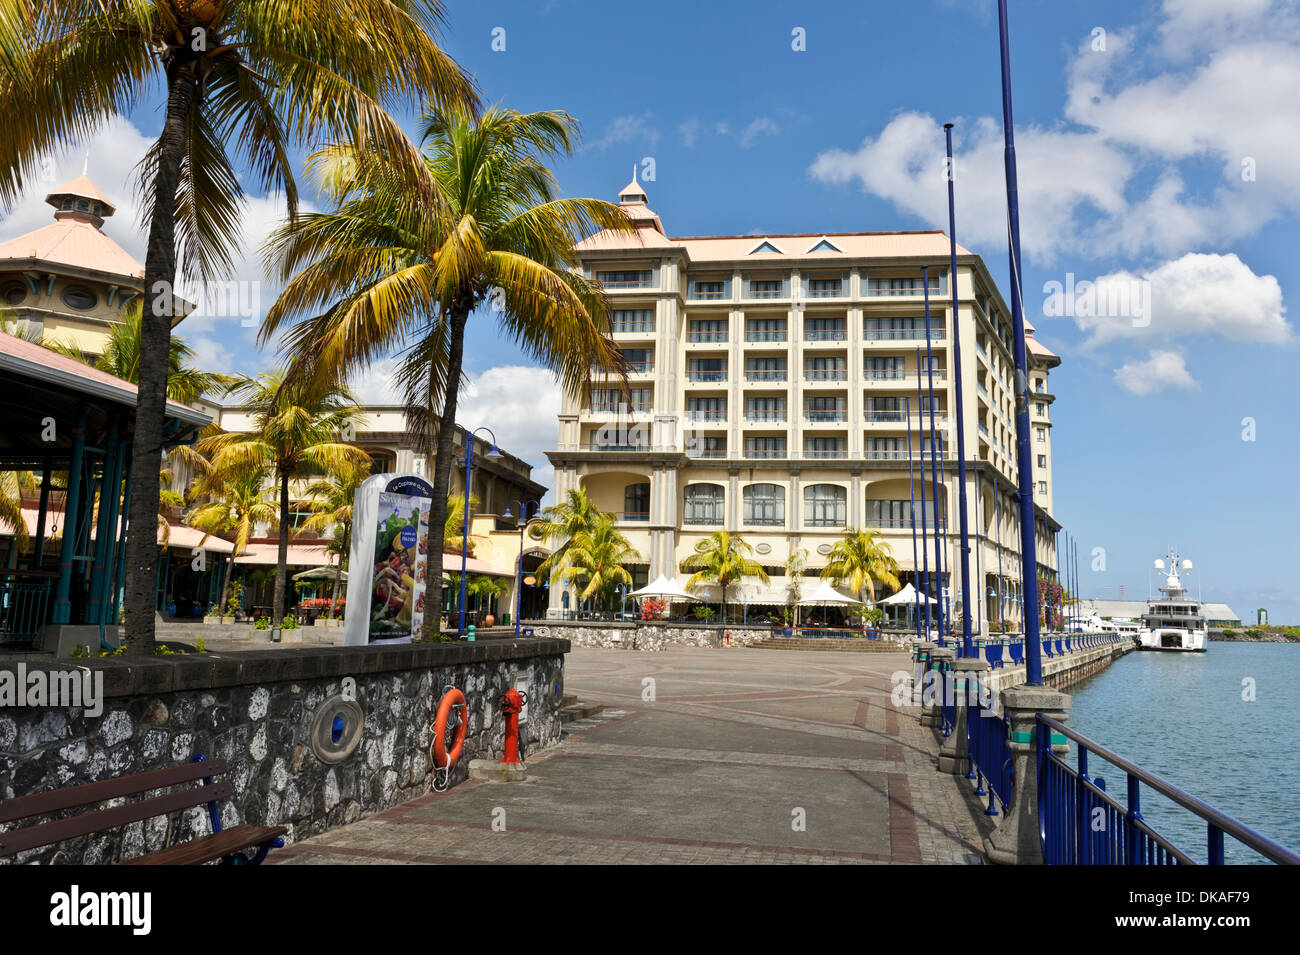 Labourdonais Hotel in Place Du Caudan, Port Louis, Mauritius. Stock Photo